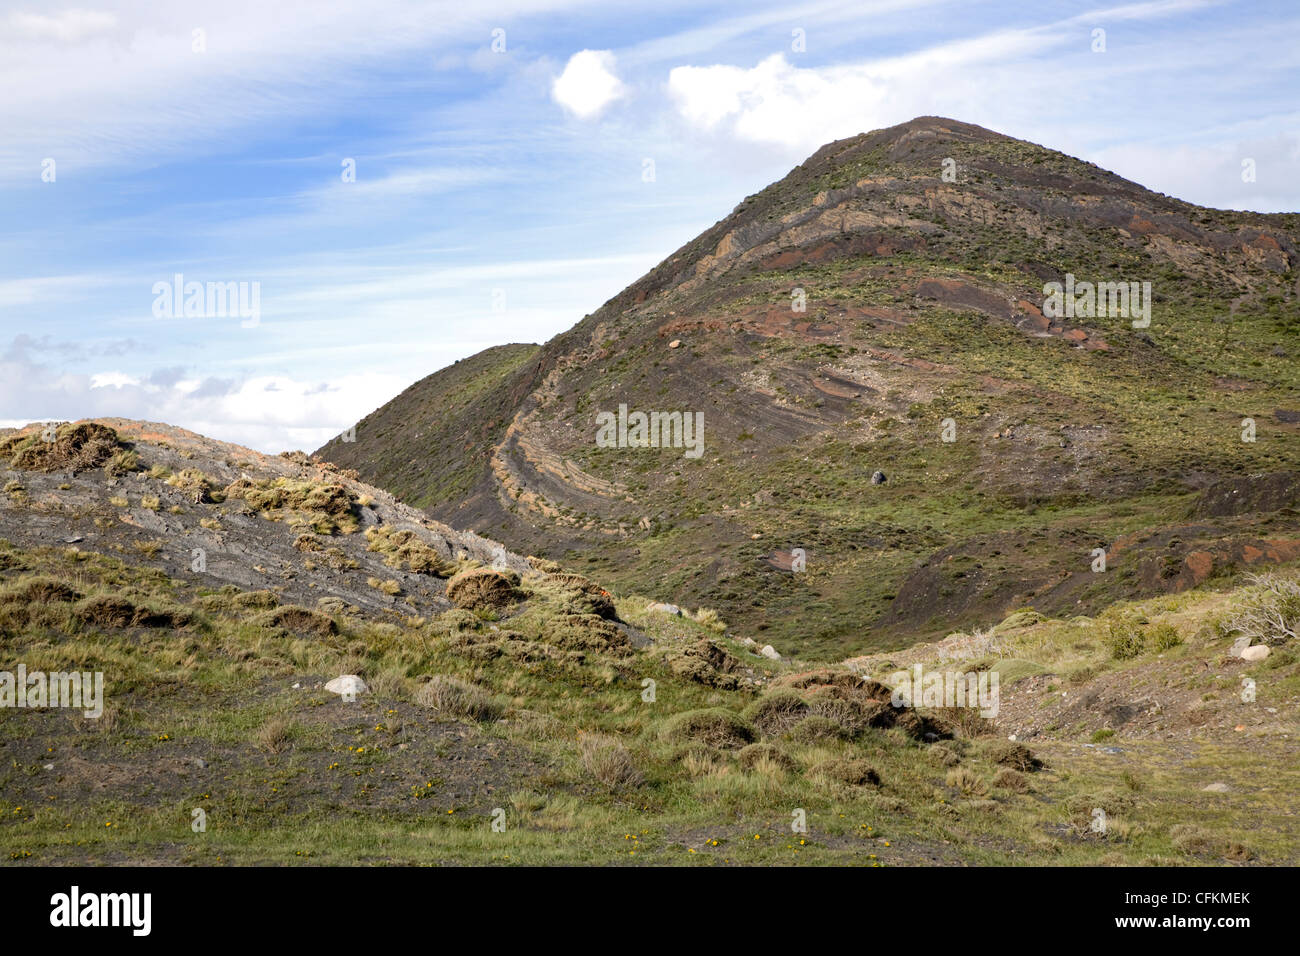 Couches de rochers montrant l'érosion différentielle, Parc National Torres del Paine, Chili Banque D'Images